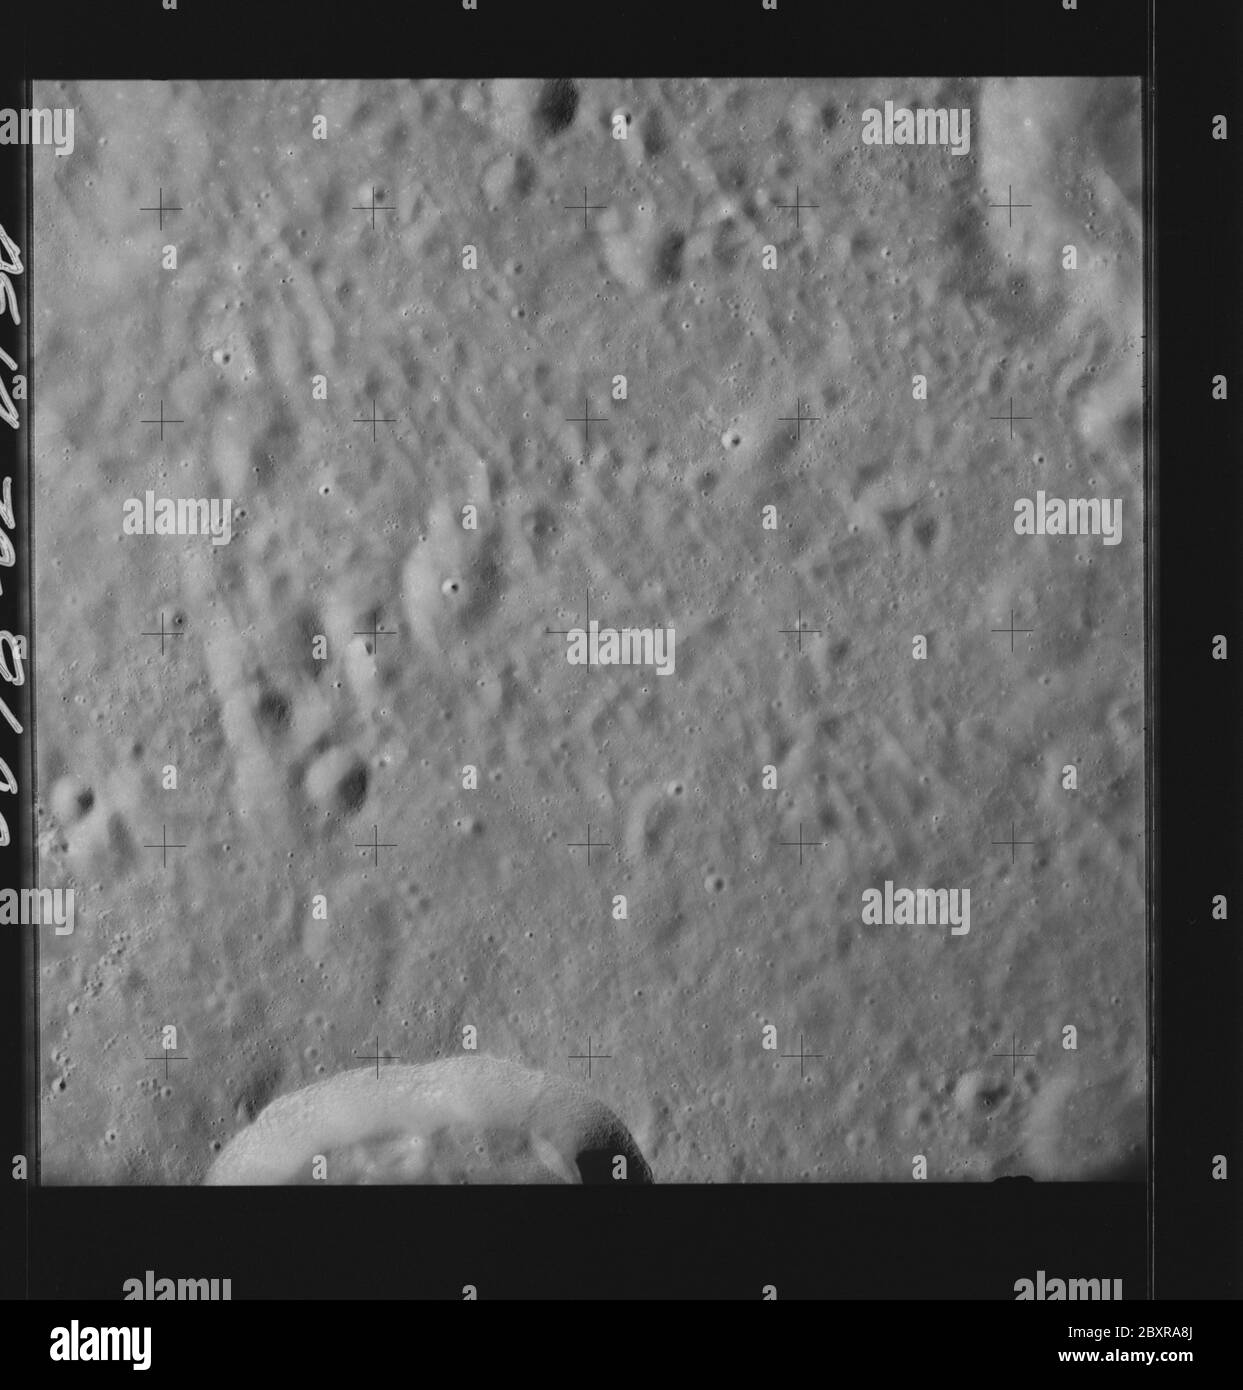 AS14-70-9680 - Apollo 14 - immagine della missione Apollo 14 - Vista della superficie lunare a sud del cratere del Vesalius e a nord del cratere del Meitner; portata e contenuto: Il database originale descrive questo come: Descrizione: Vista della superficie lunare a sud del cratere Vesalius e a nord del cratere Meitner. Sono state scattate immagini sulla Rivoluzione 26 della missione Apollo 14. Il caricatore di pellicola originale era etichettato Q, il tipo di pellicola era 3400BW (Panatomic-X, Nero e Bianco), lente da 80 mm con un'elevazione del sole di 26 gradi. La scala approssimativa della foto è 1:1,380,000. La latitudine del punto principale era 7.0S per Longitudine 115.0E, con Foto Stock